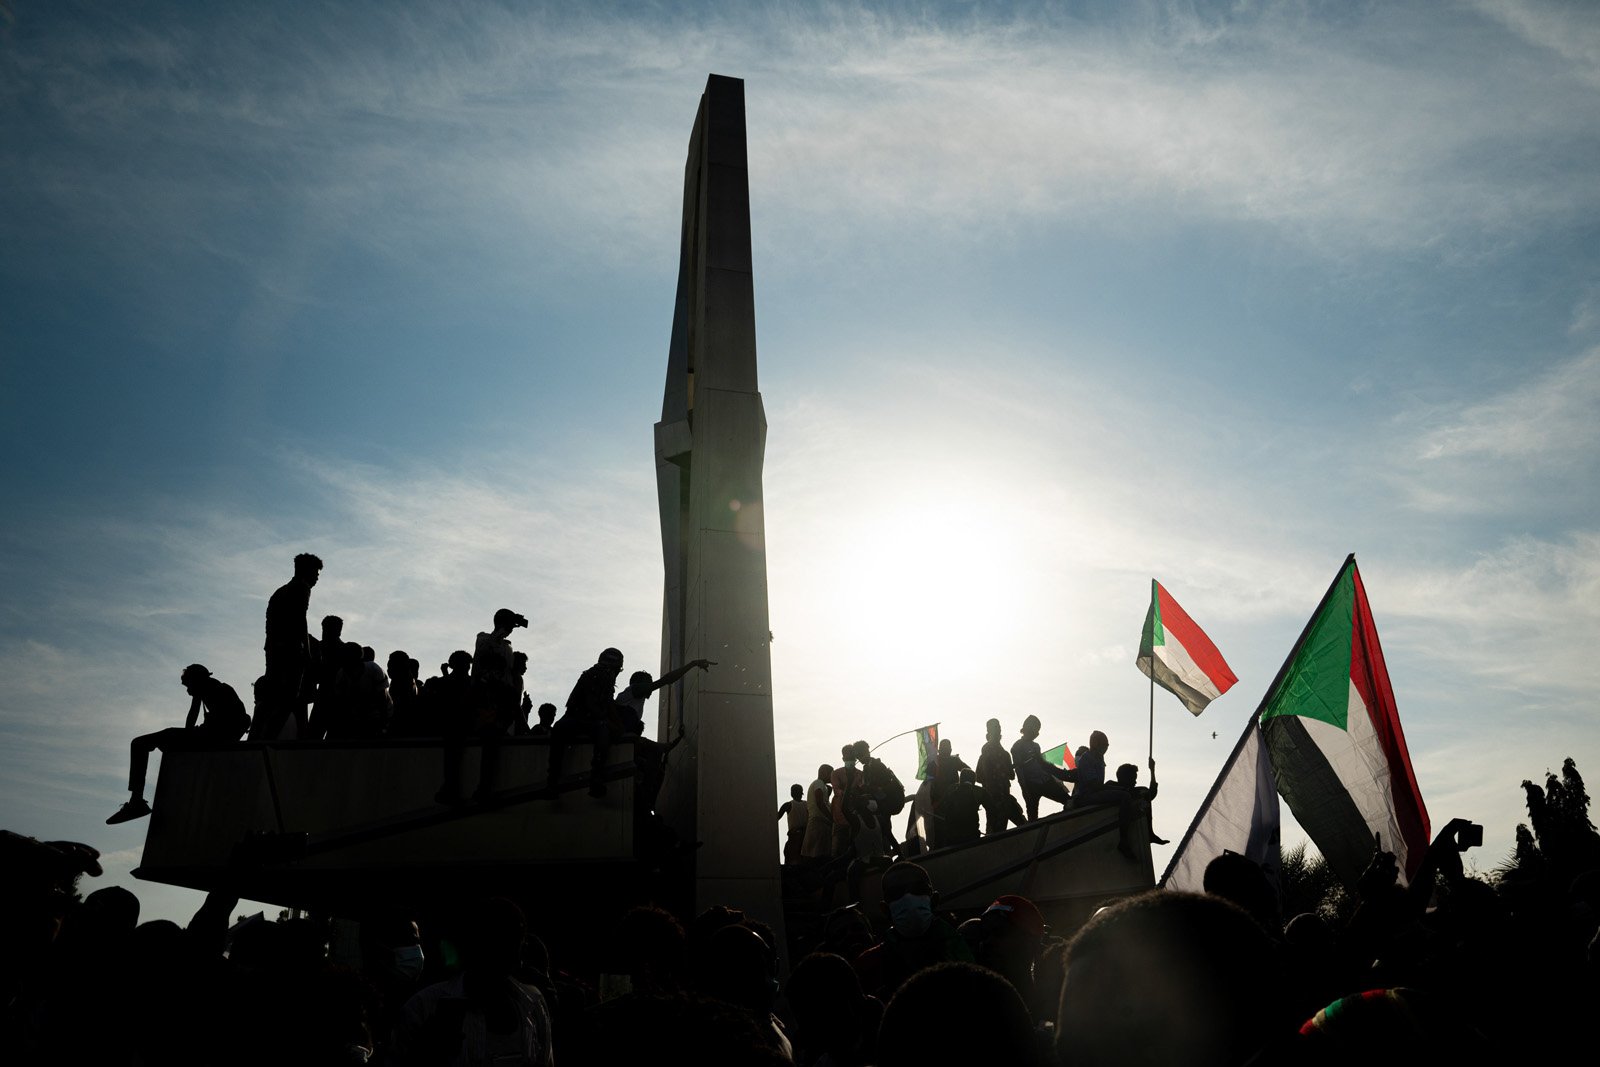  Des manifestants soudanais sur un monument ornant l’entrée du palais présidentiel où réside le leader du coup d'état, le général Abdel Fatah Al Burhan. Khartoum, 19 décembre 2021. 